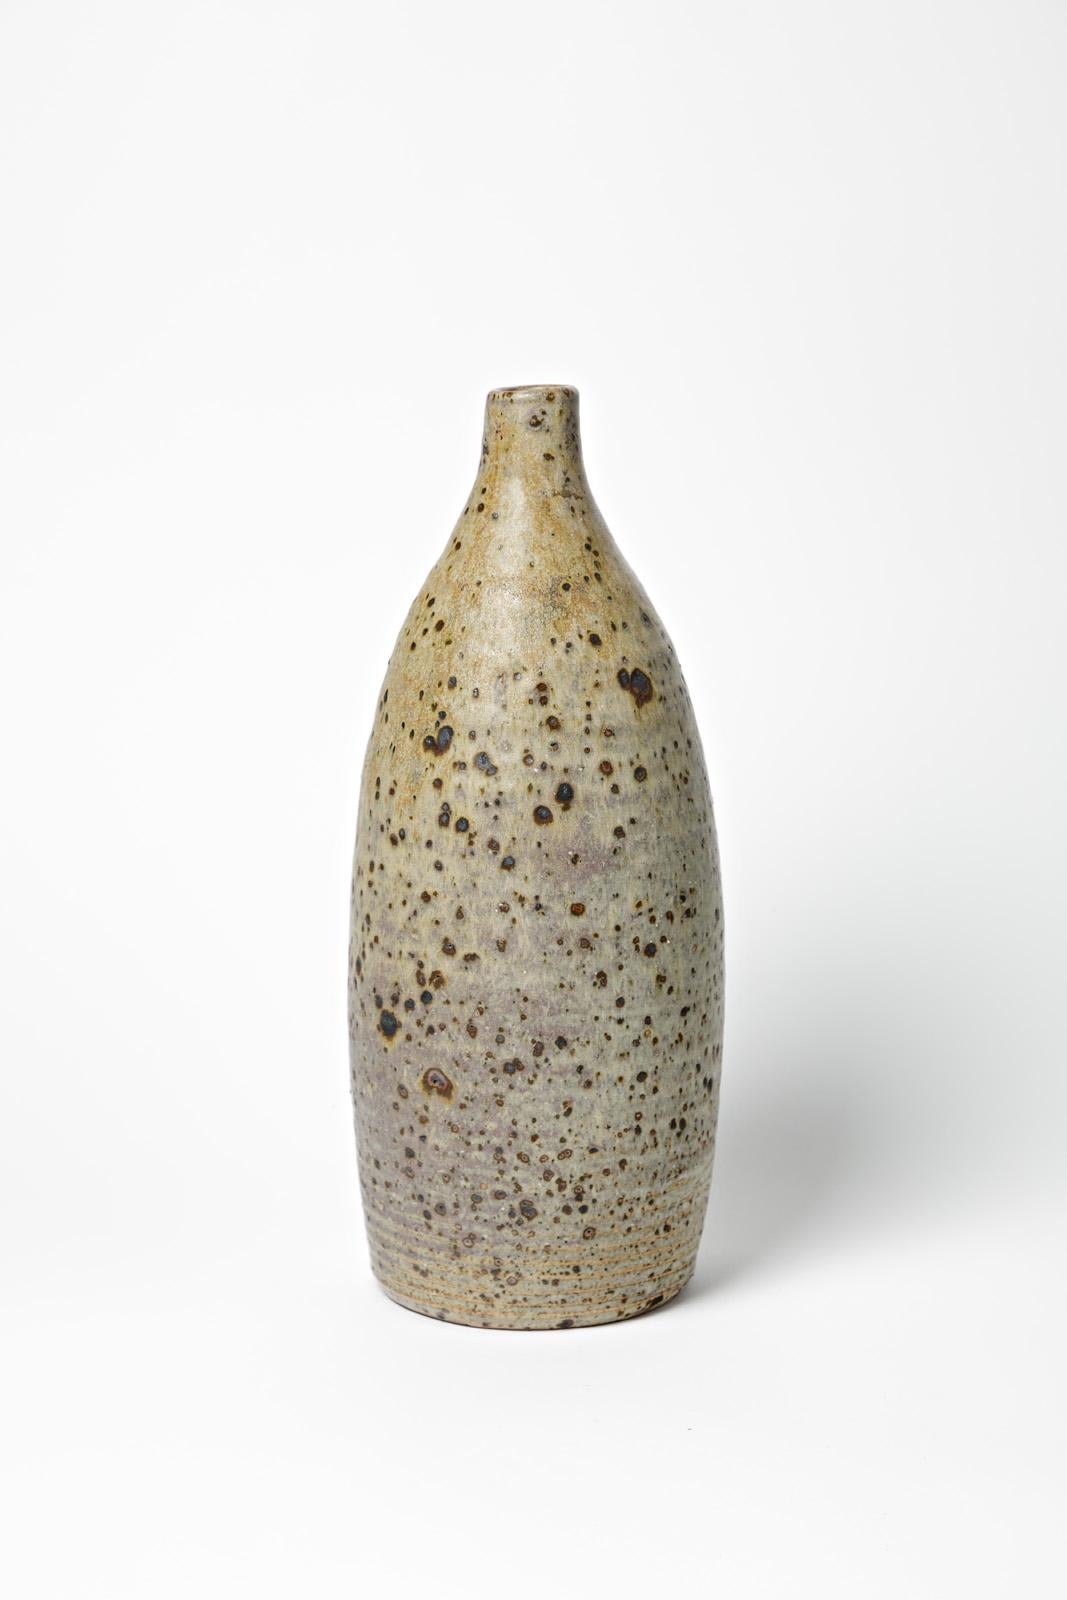 La Borne - Circa 1960

Large grey stoneware ceramic bottle or vase

Unique handmade piece

Original perfect condition

Measures: Height 36 cm
Large 14 cm.